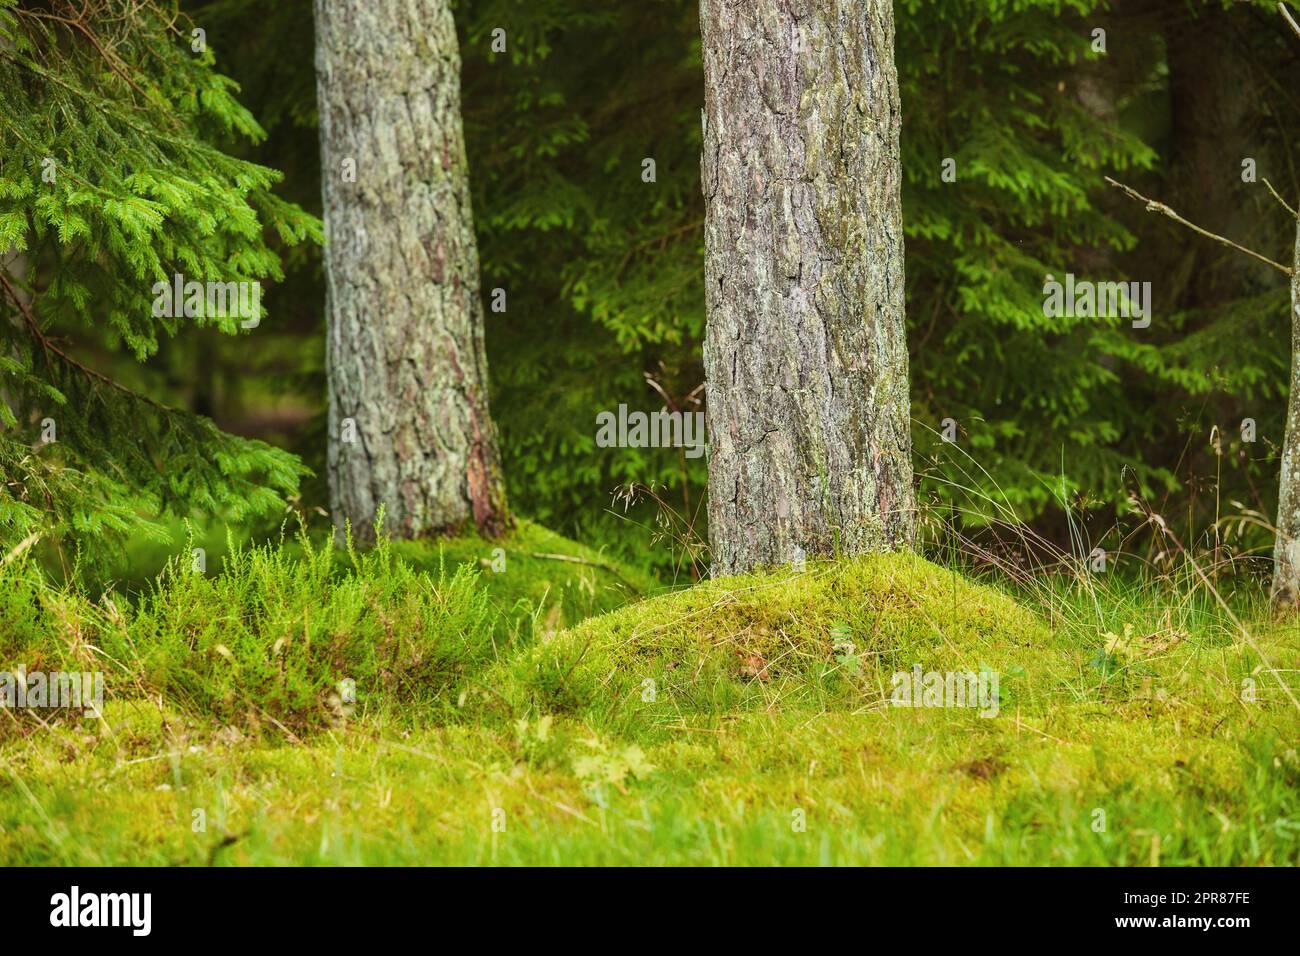 Una foresta con tronchi di alberi con muschio verde su di loro in una giornata autunnale all'aria aperta nella natura. Il paesaggio dei boschi con dettagli di piante vibranti, arbusti ed erba nei boschi in una giornata di sole Foto Stock